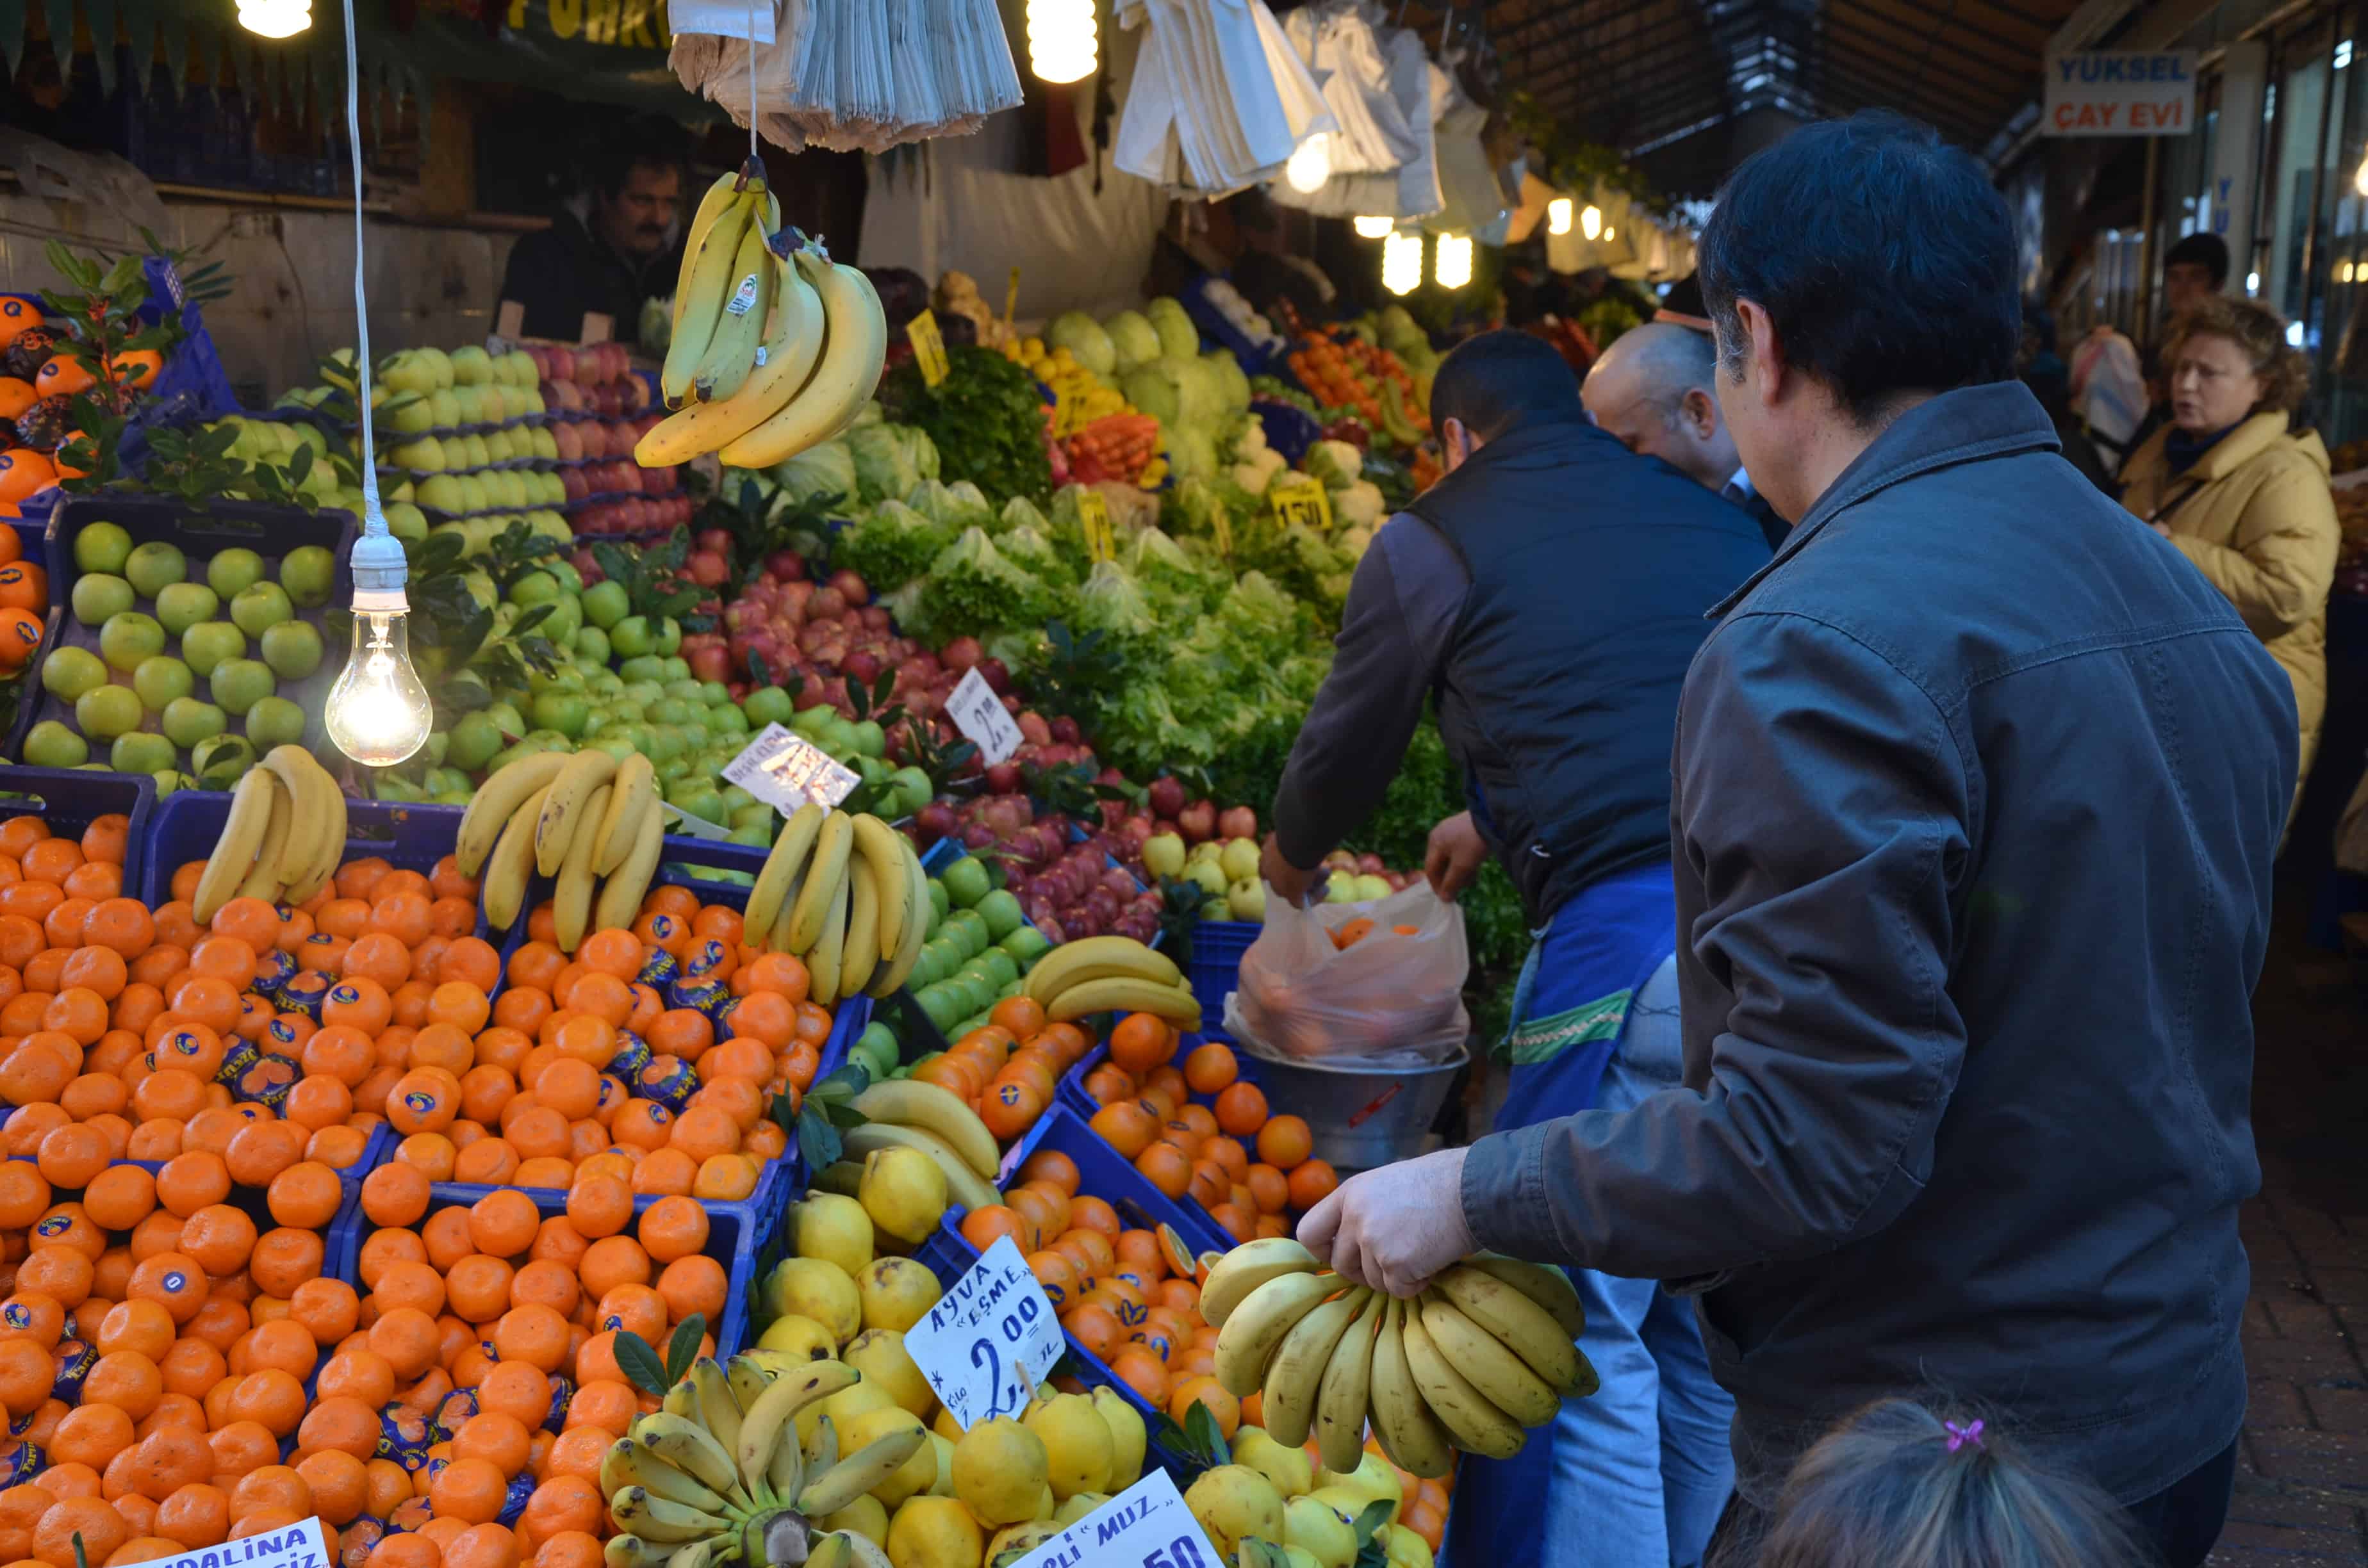 Fruit stand in Üsküdar, Istanbul, Turkey